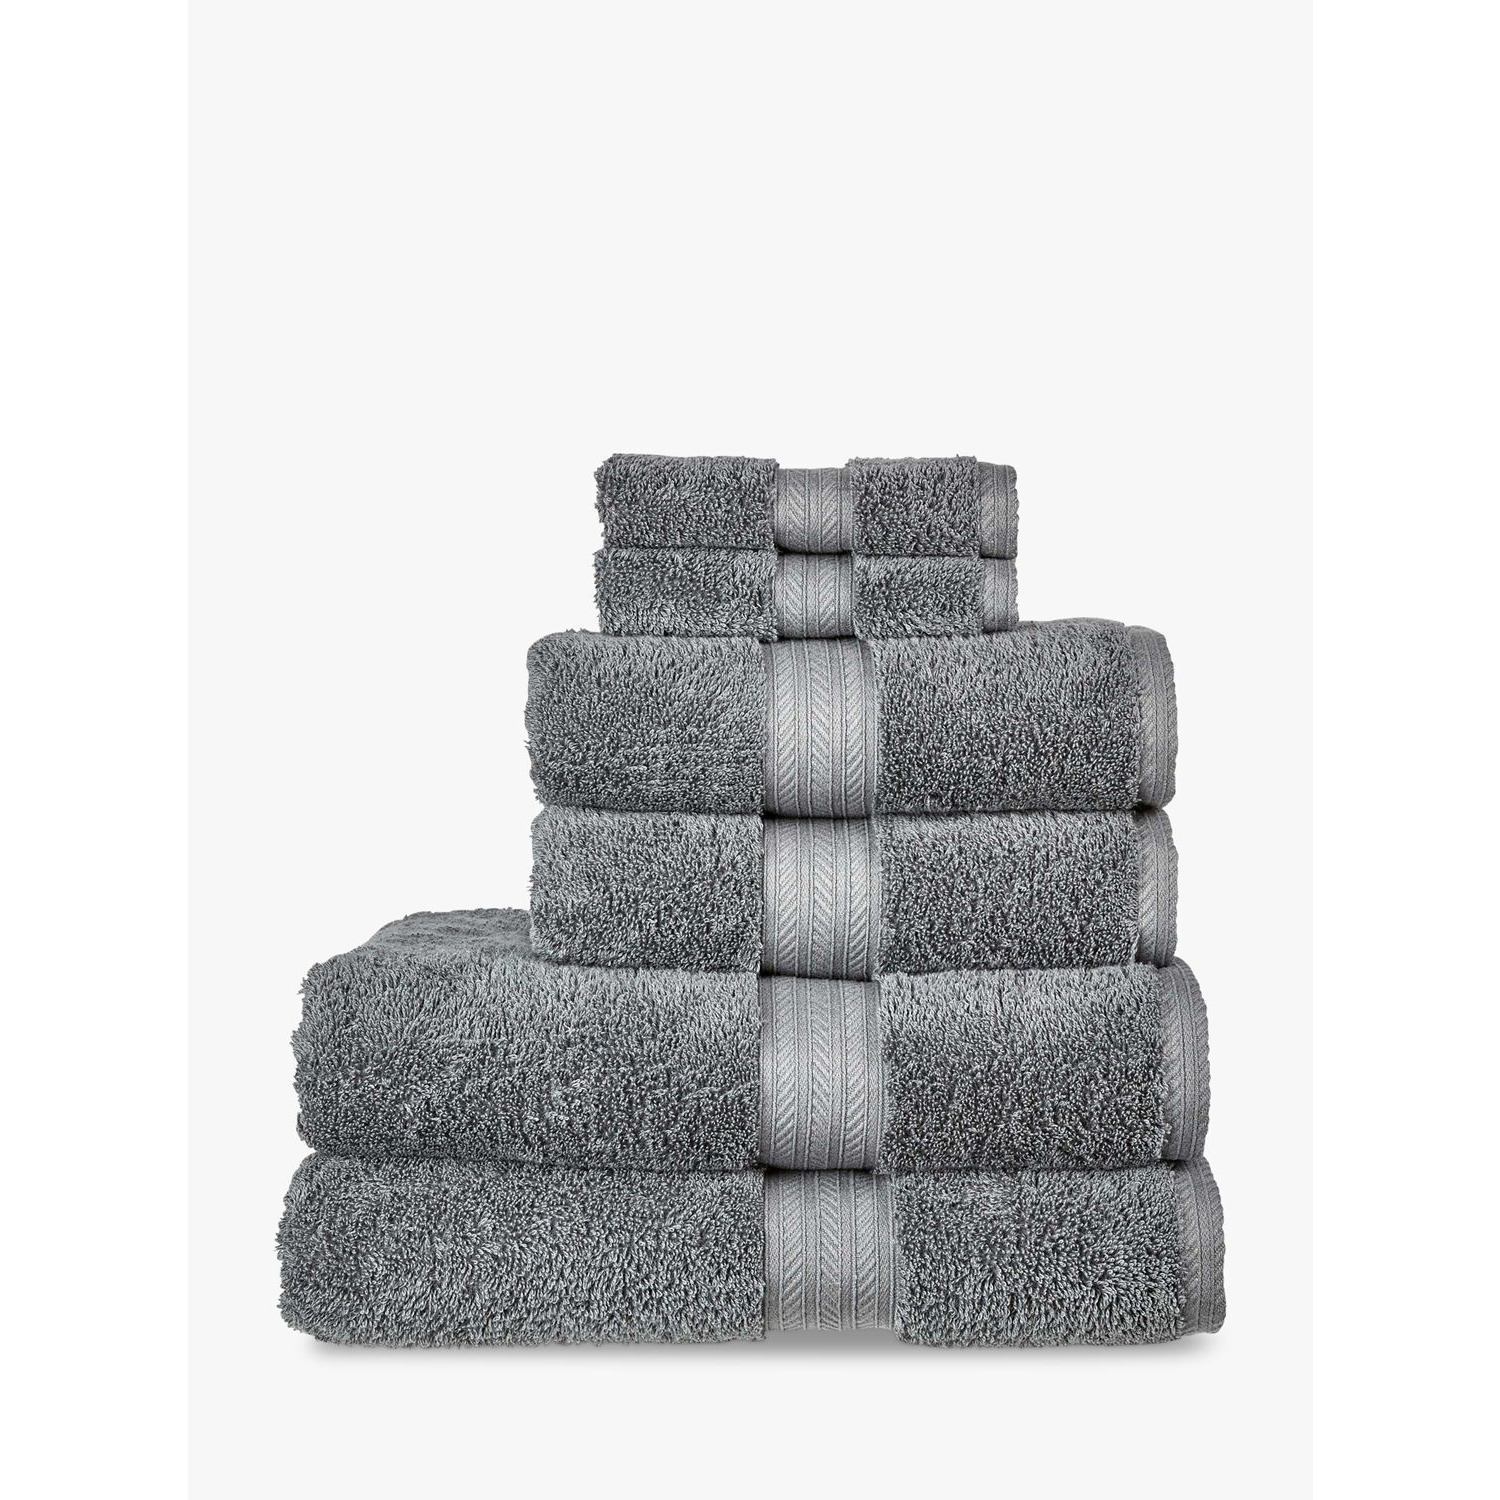 Christy Renaissance Towels - image 1